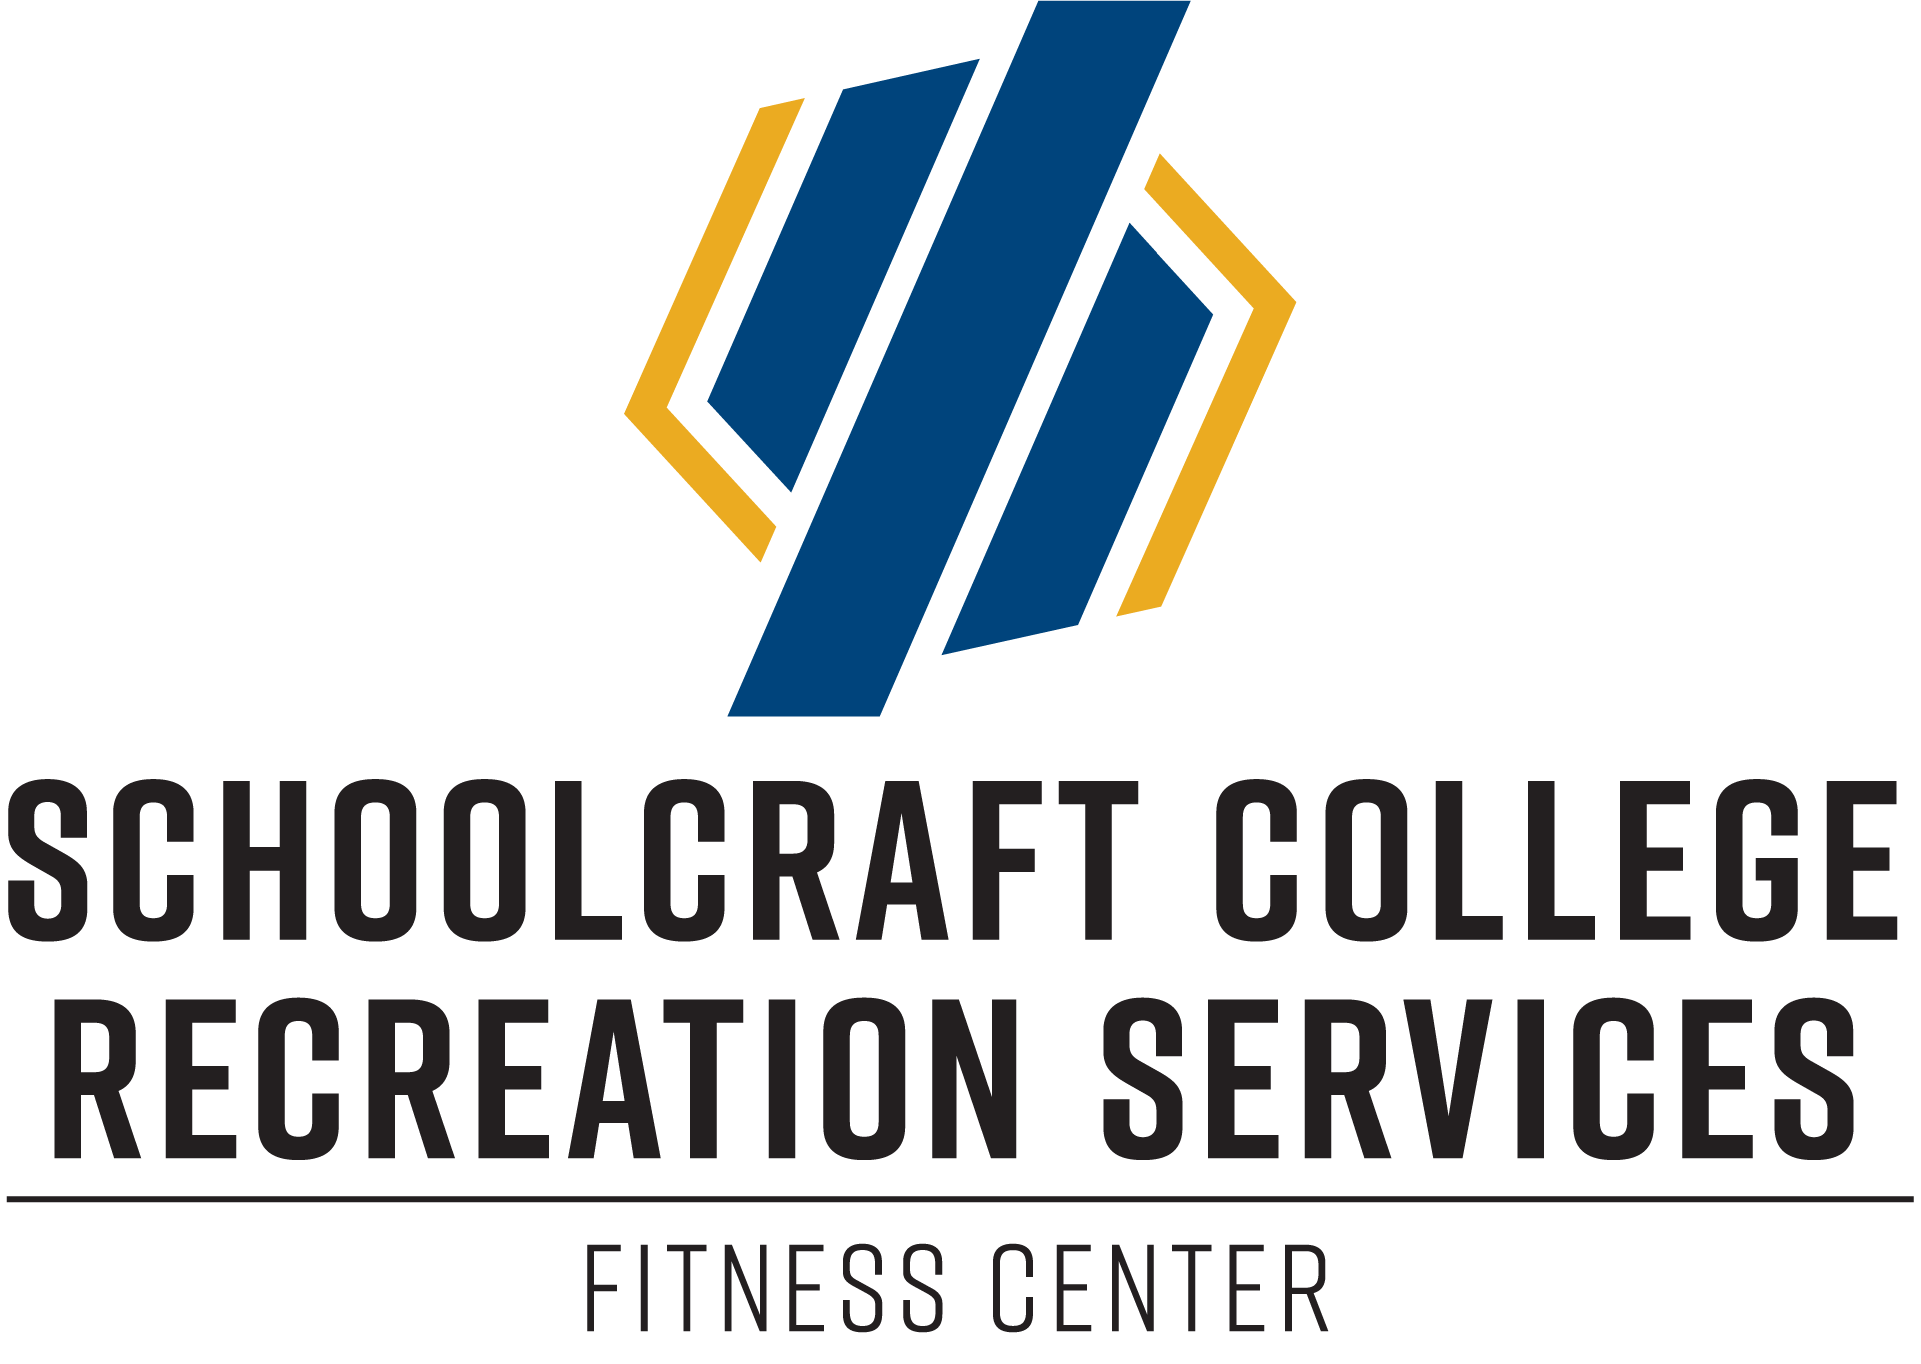 Schoolcraft College Recreation Services Logo